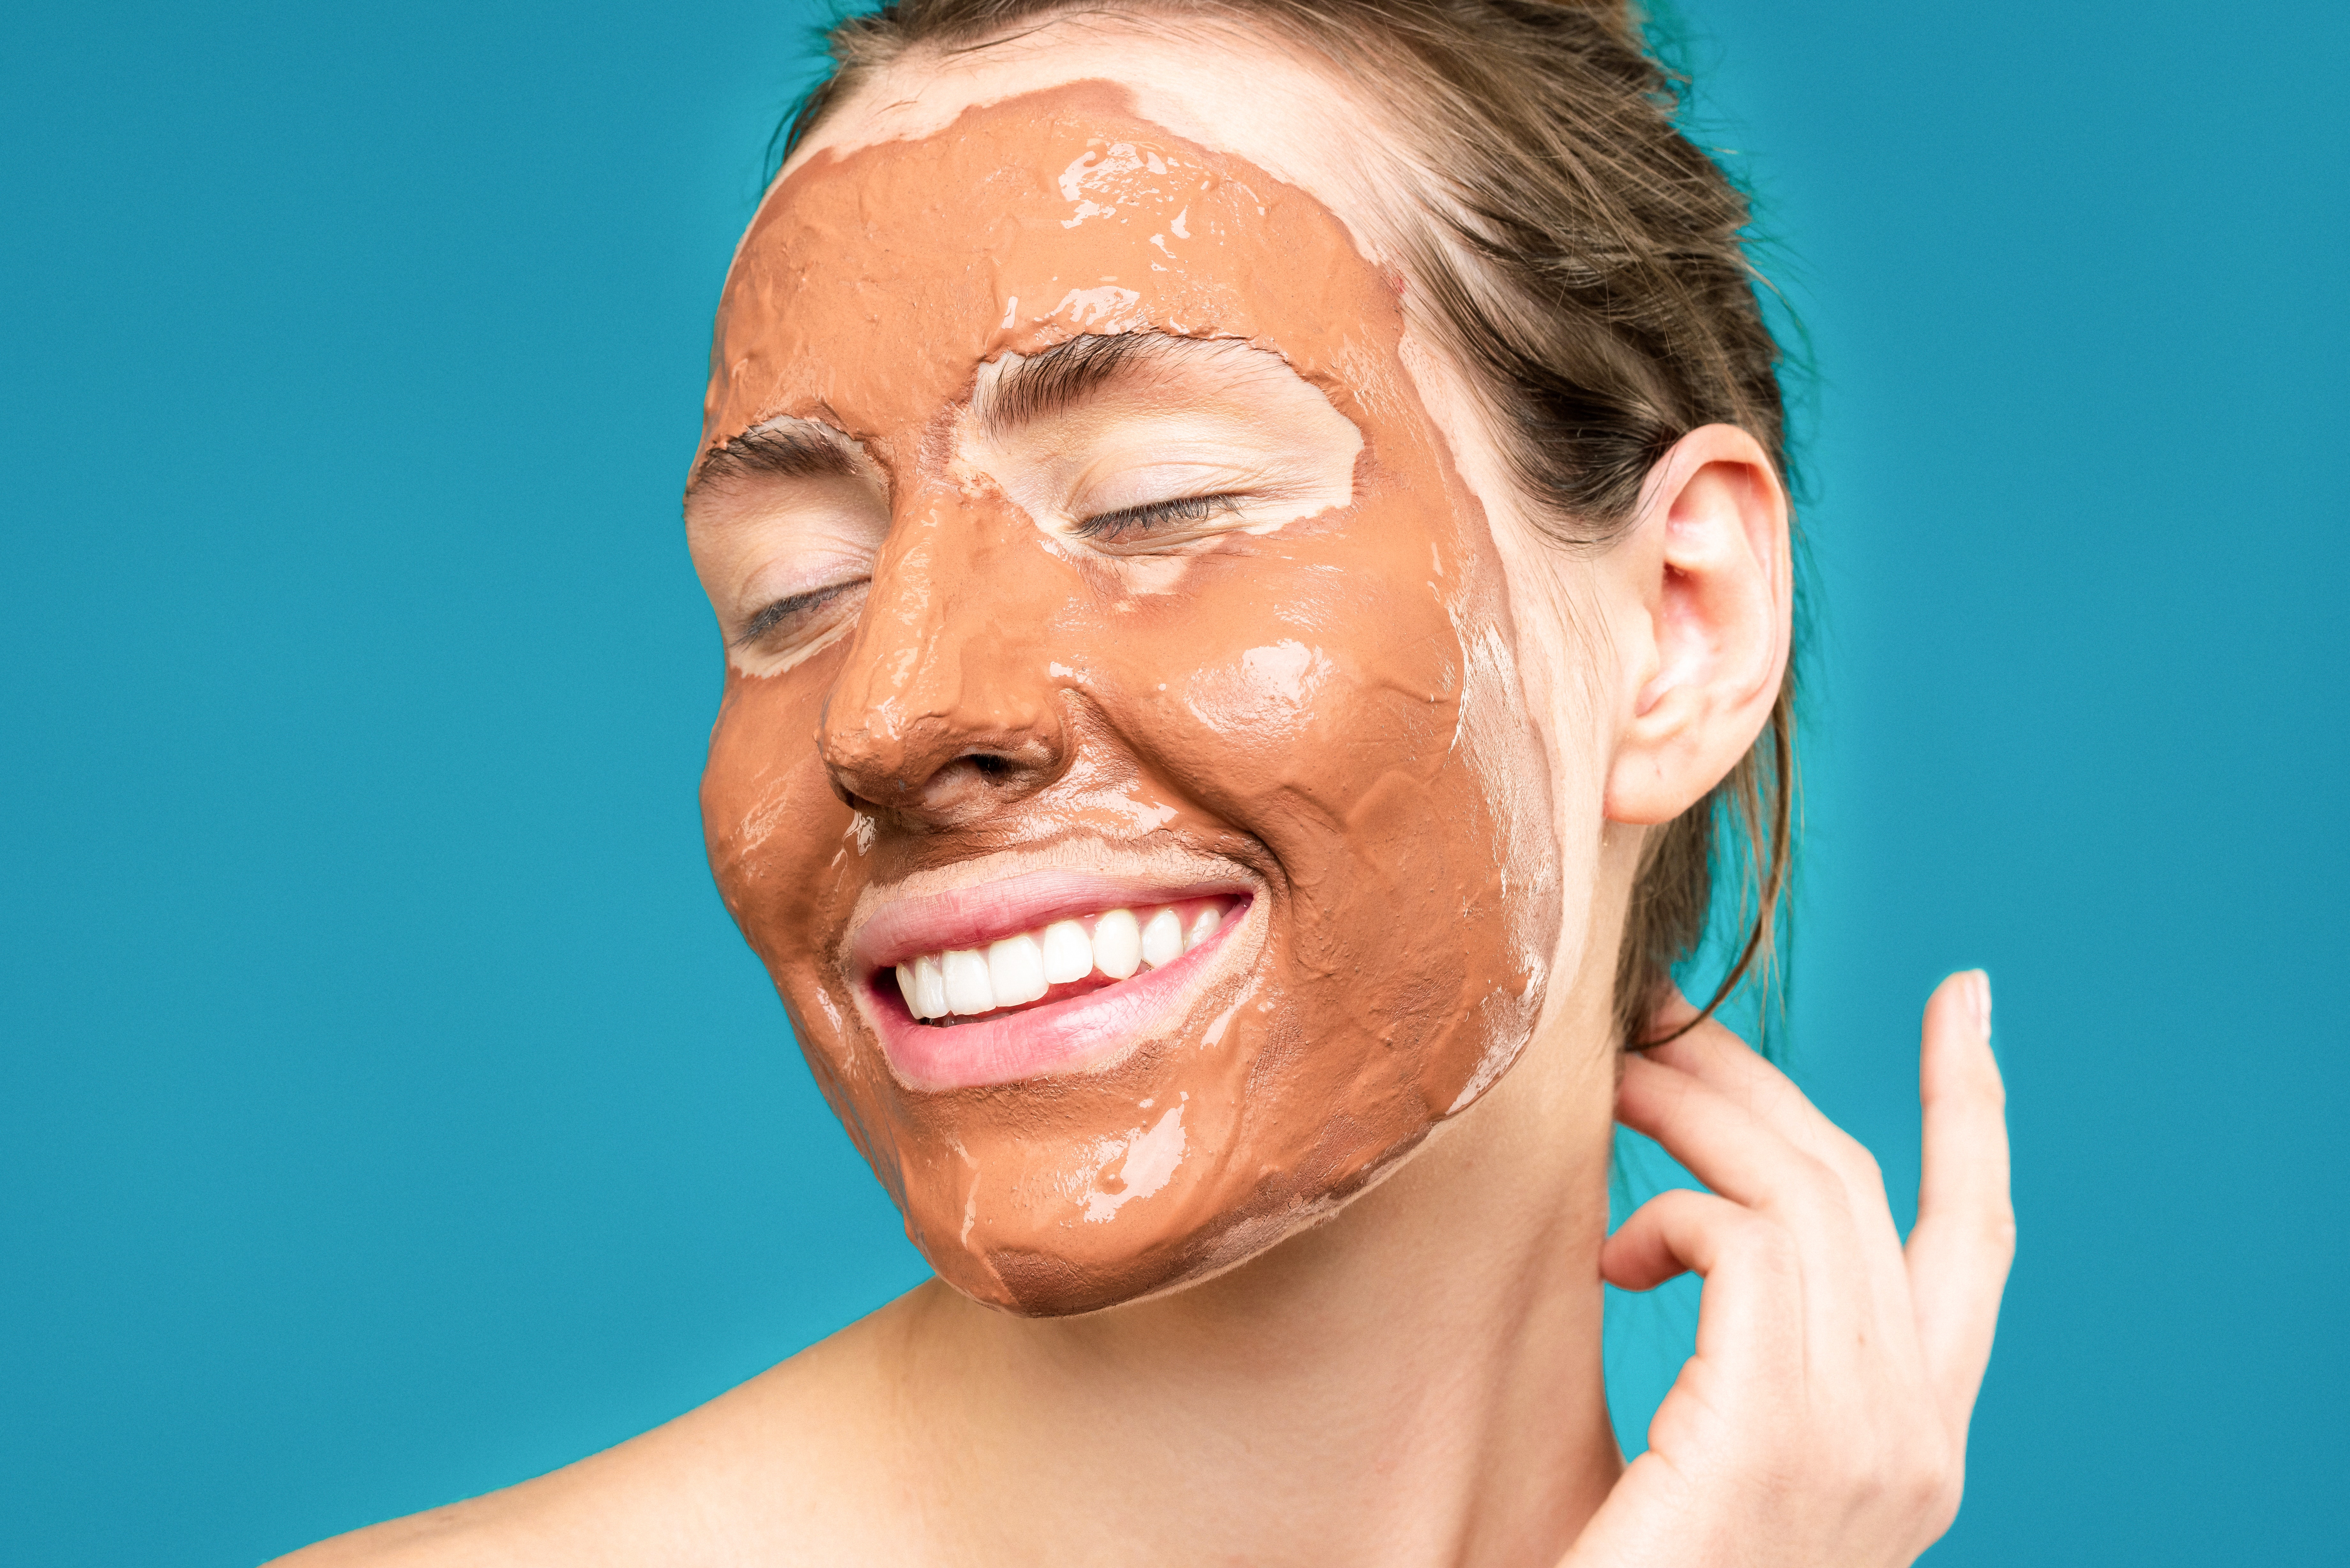 Las mascarillas pueden ayudar grandemente a combatir el acné. (Foto Prensa Libre: Pexels)